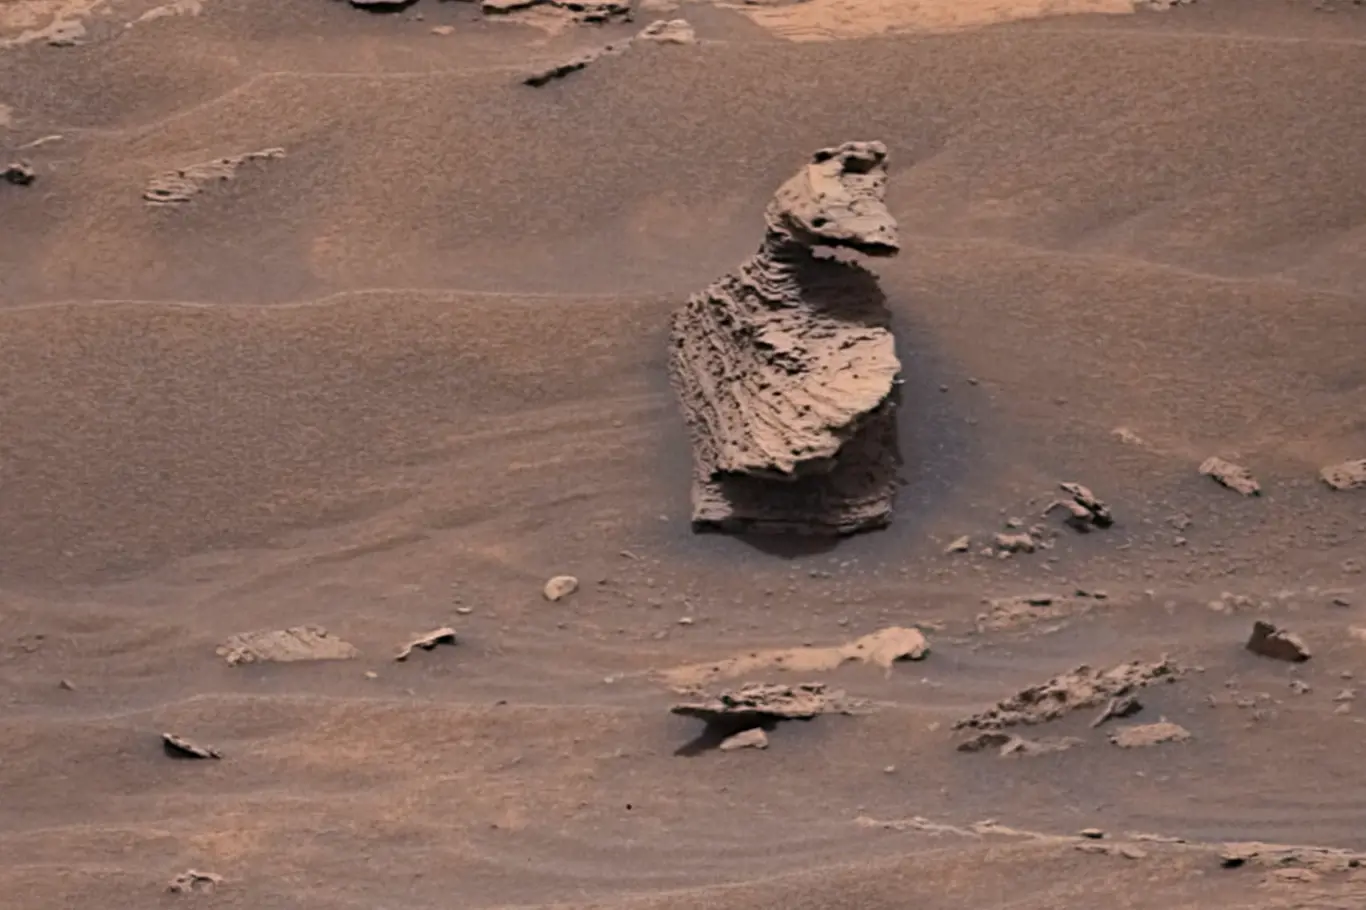 ROver Curiosty nalezl na Marsu formaci podobnou kachně